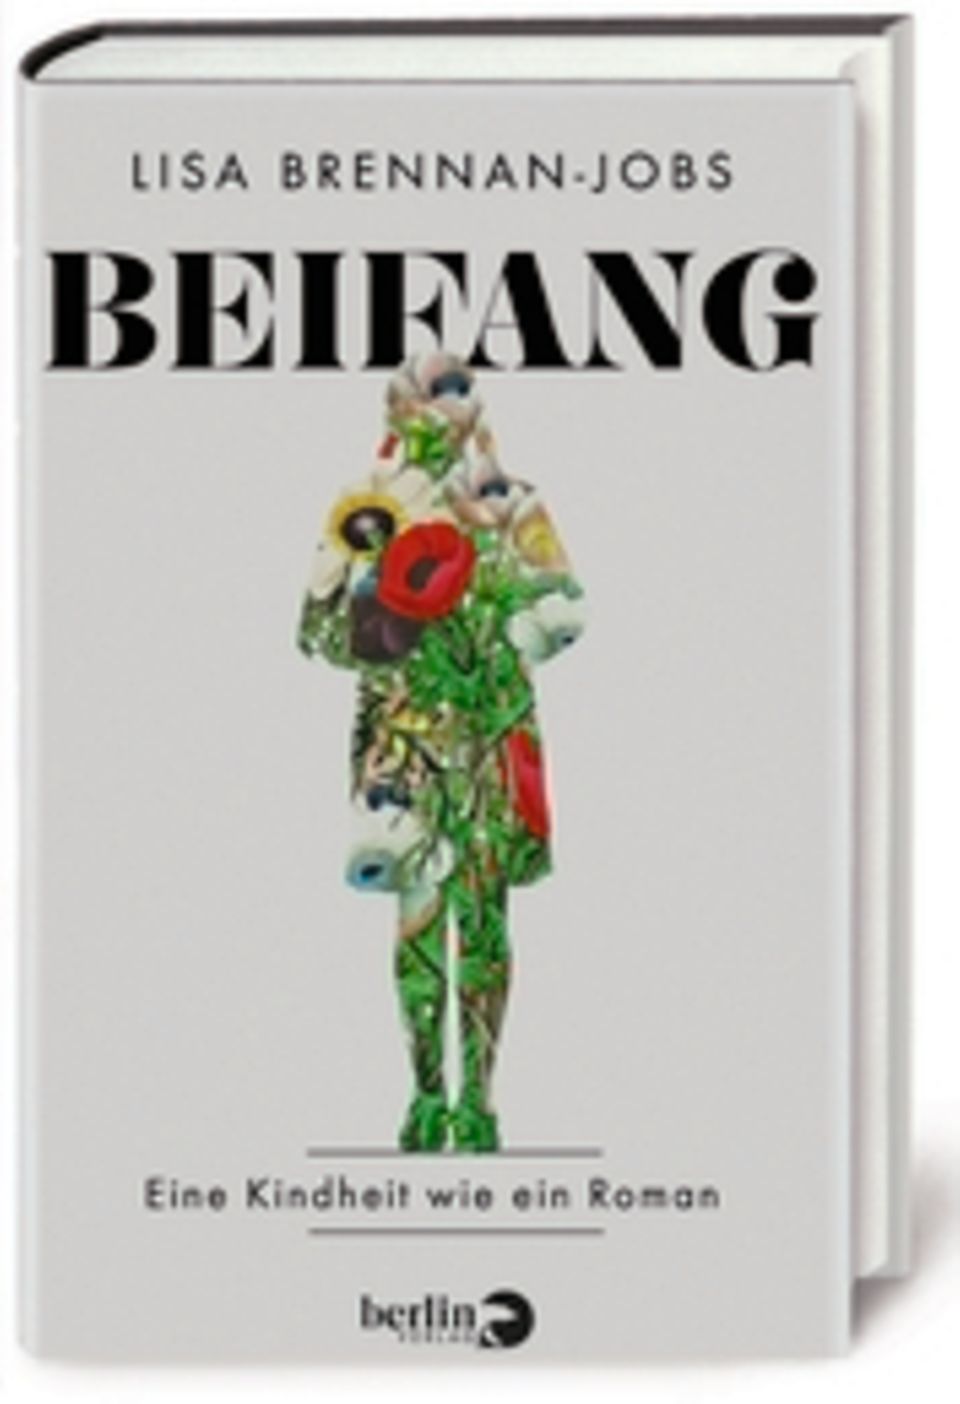 Lisa Brennan-Jobs: "Beifang. Eine Kindheit wie ein Roman", Berlin Verlag, 384 S., 22 Euro